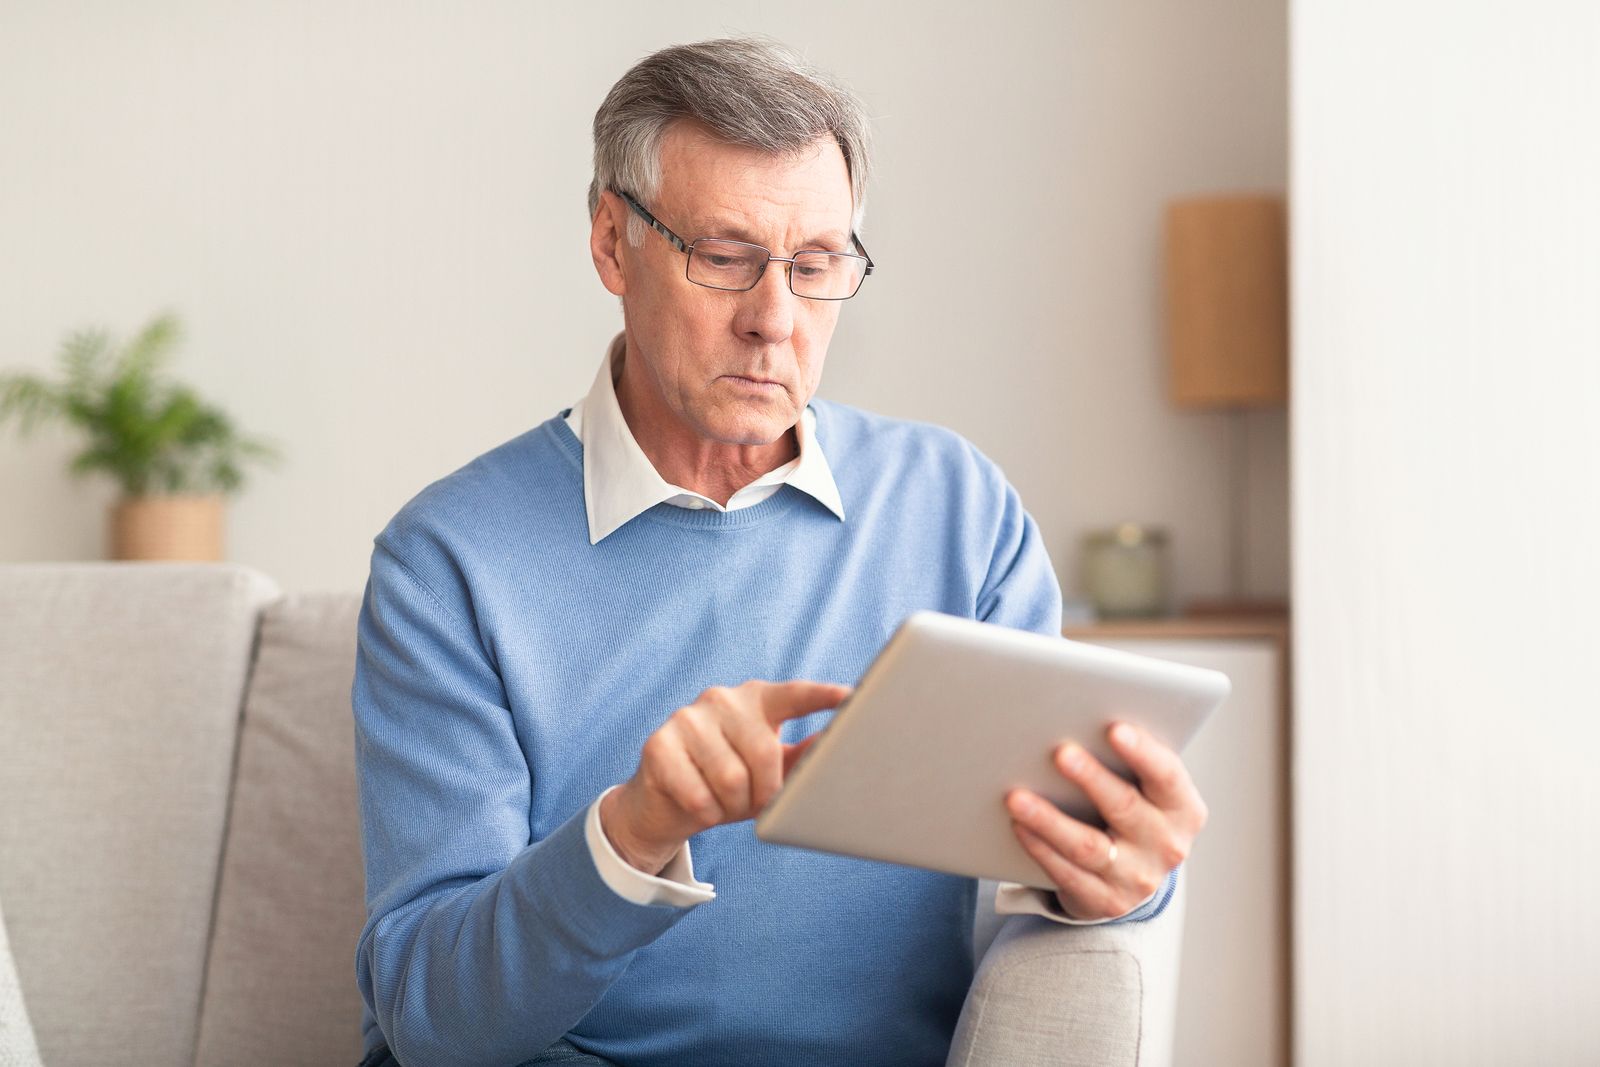 La Seguridad Social lanza un asistente virtual para aclarar dudas sobre pensiones y otras cuestiones